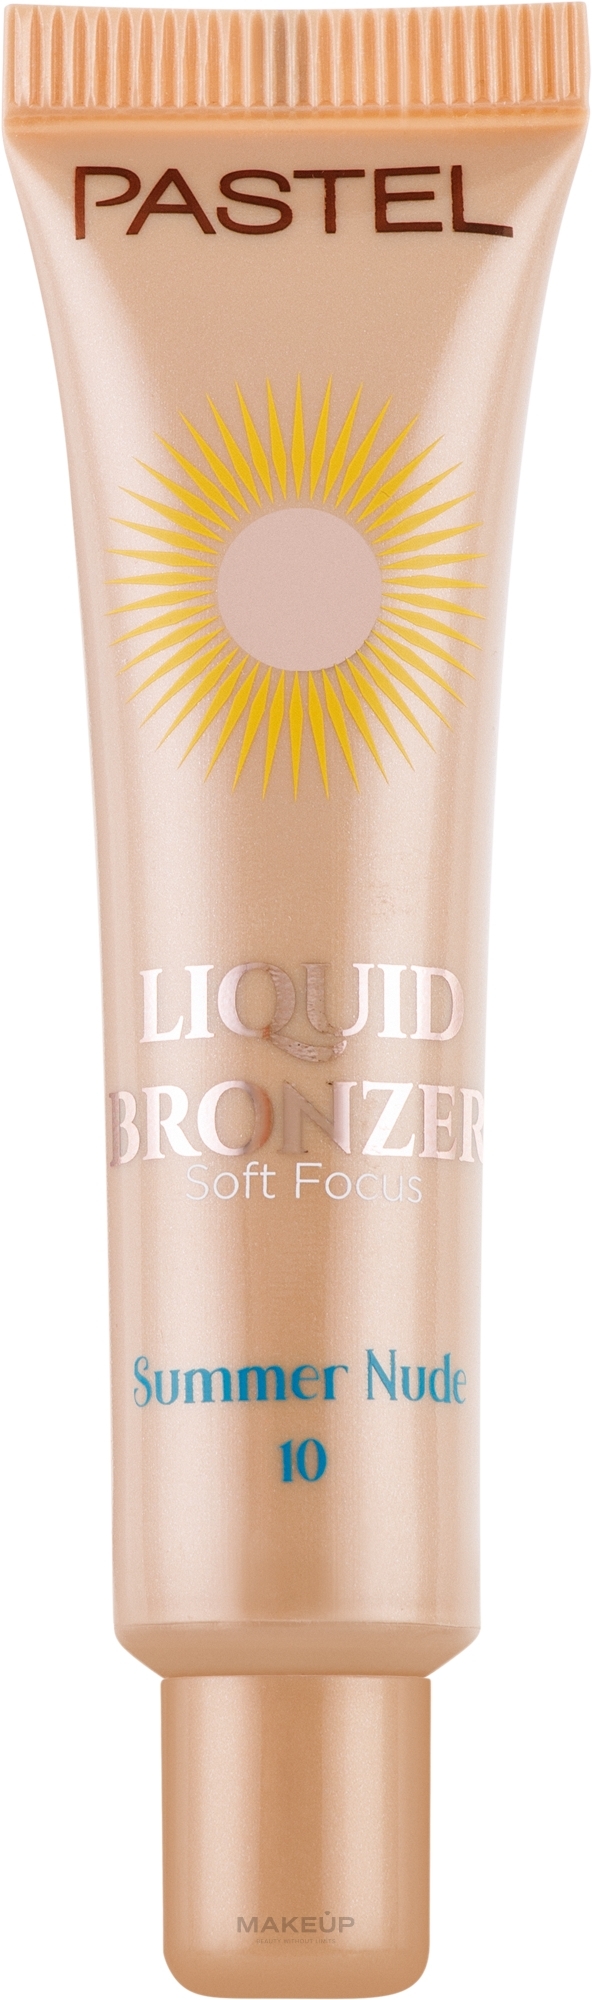 Gesichtsbronzer - Pastel Profashion Liquid Bronzer  — Bild 10